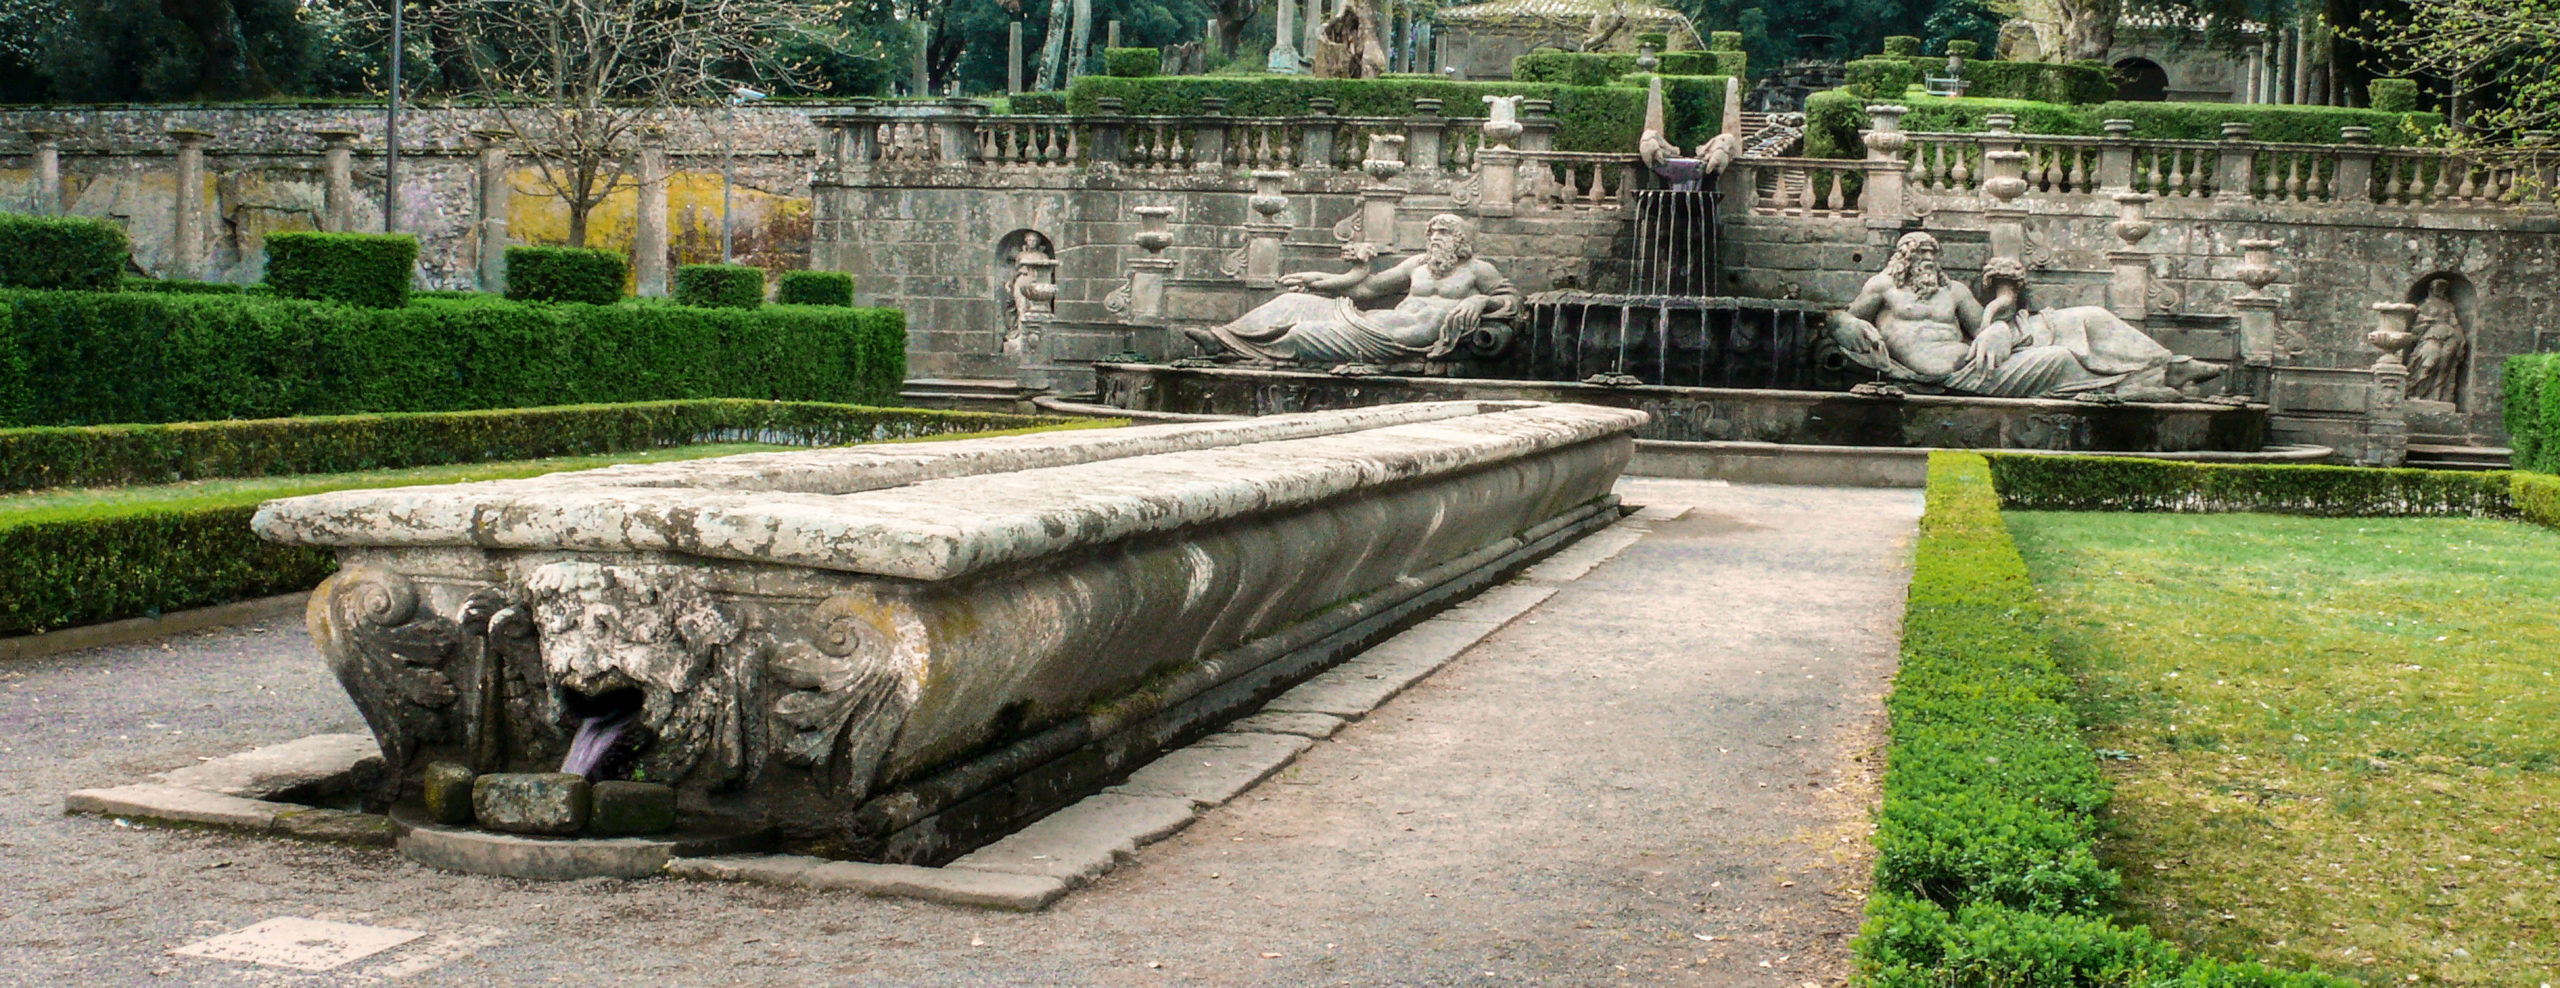 Villa Lante a Bagnaia - Tavola del Cardinale e Fontana dei Fiumi